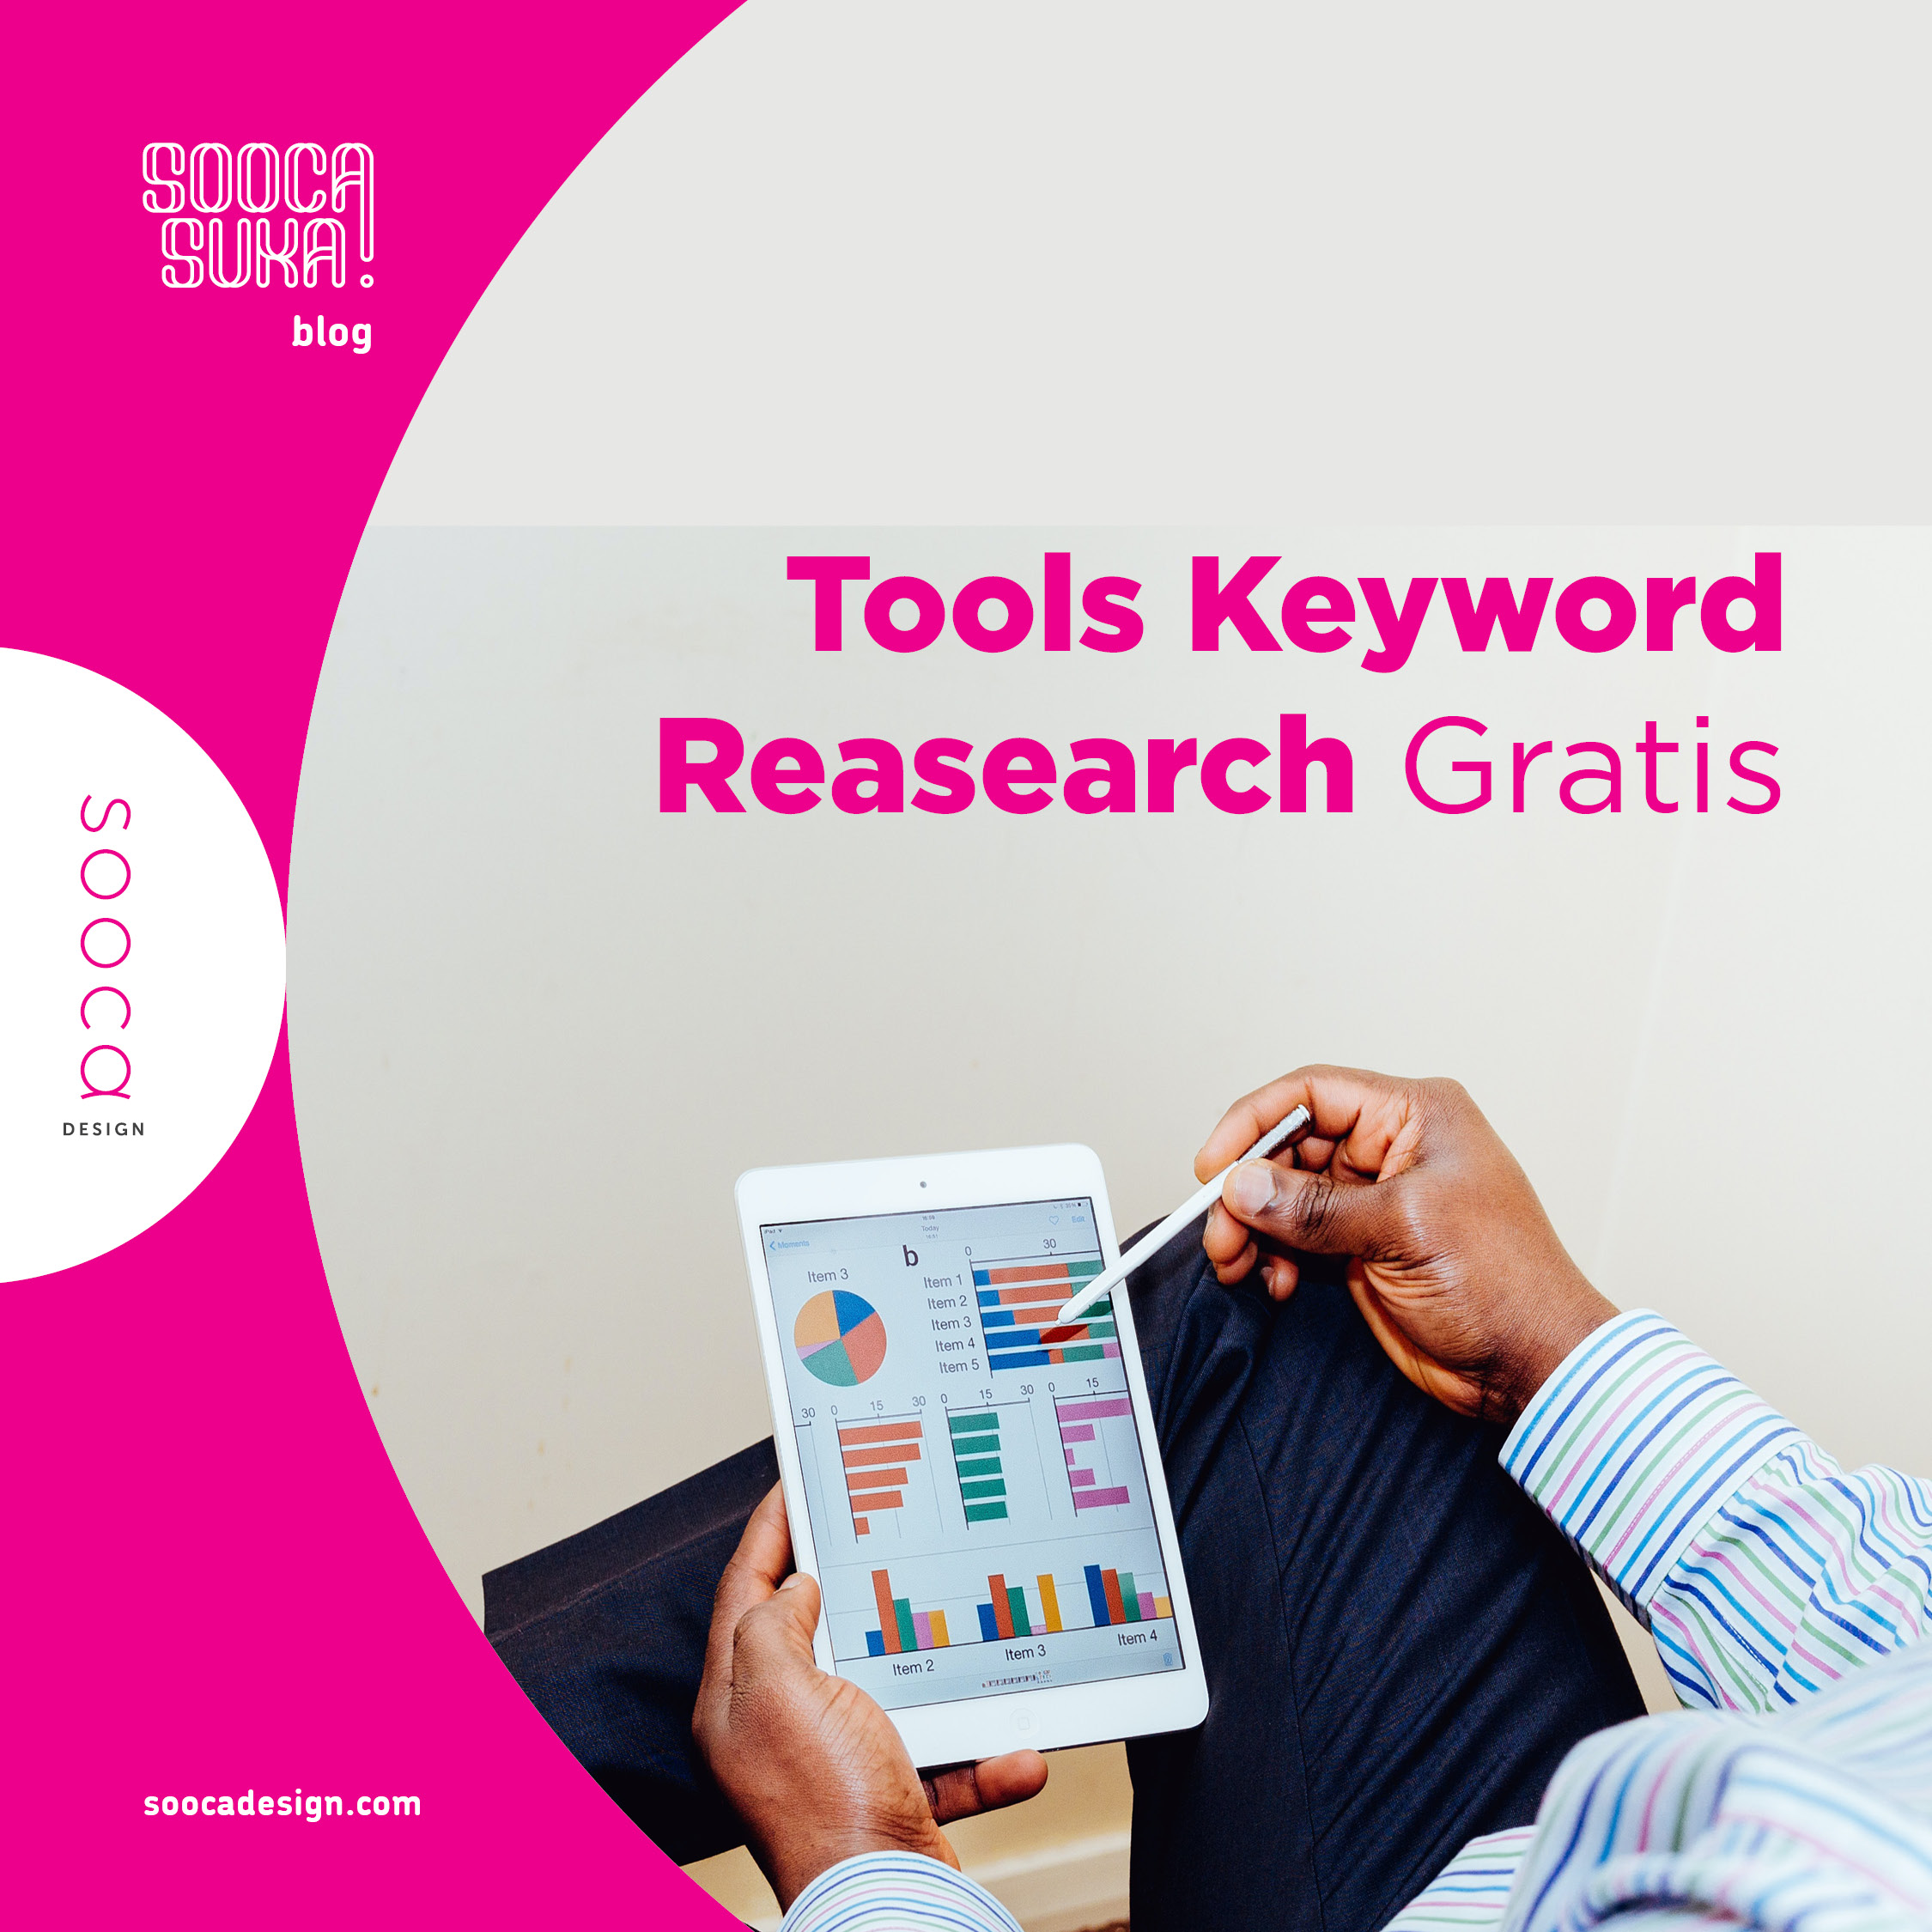 5 Tools Keyword Research Gratis